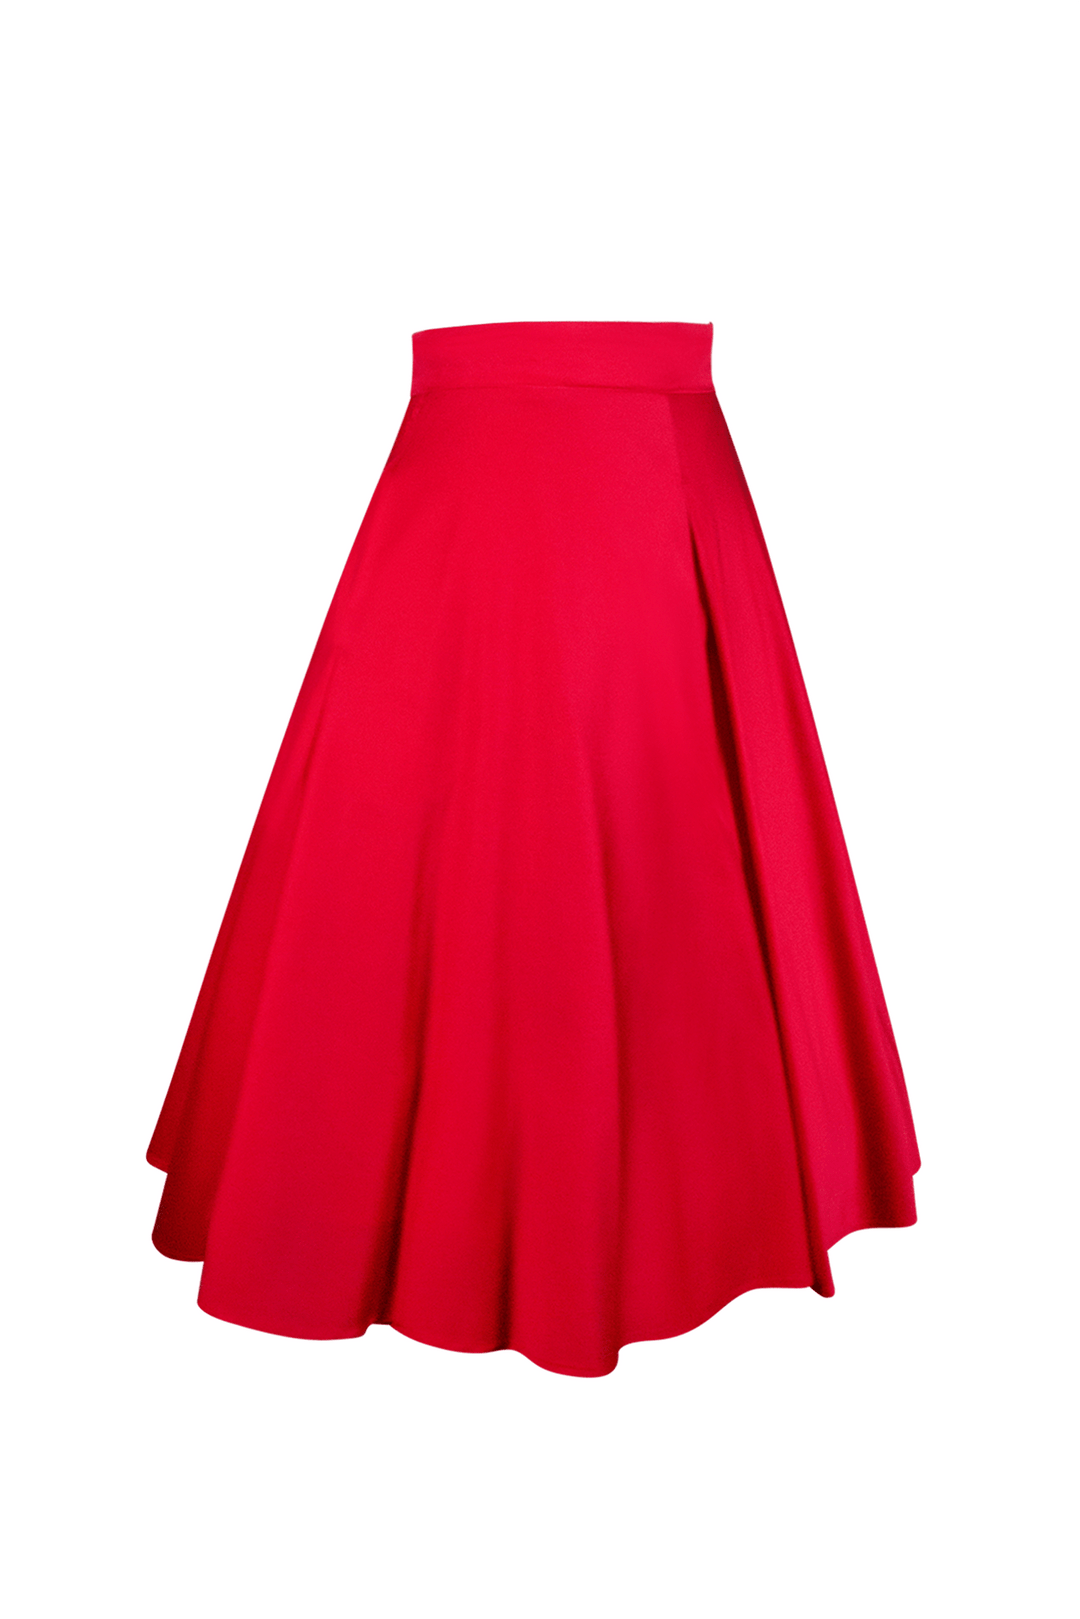 Tea Rose Classic Full Skirt (Red)